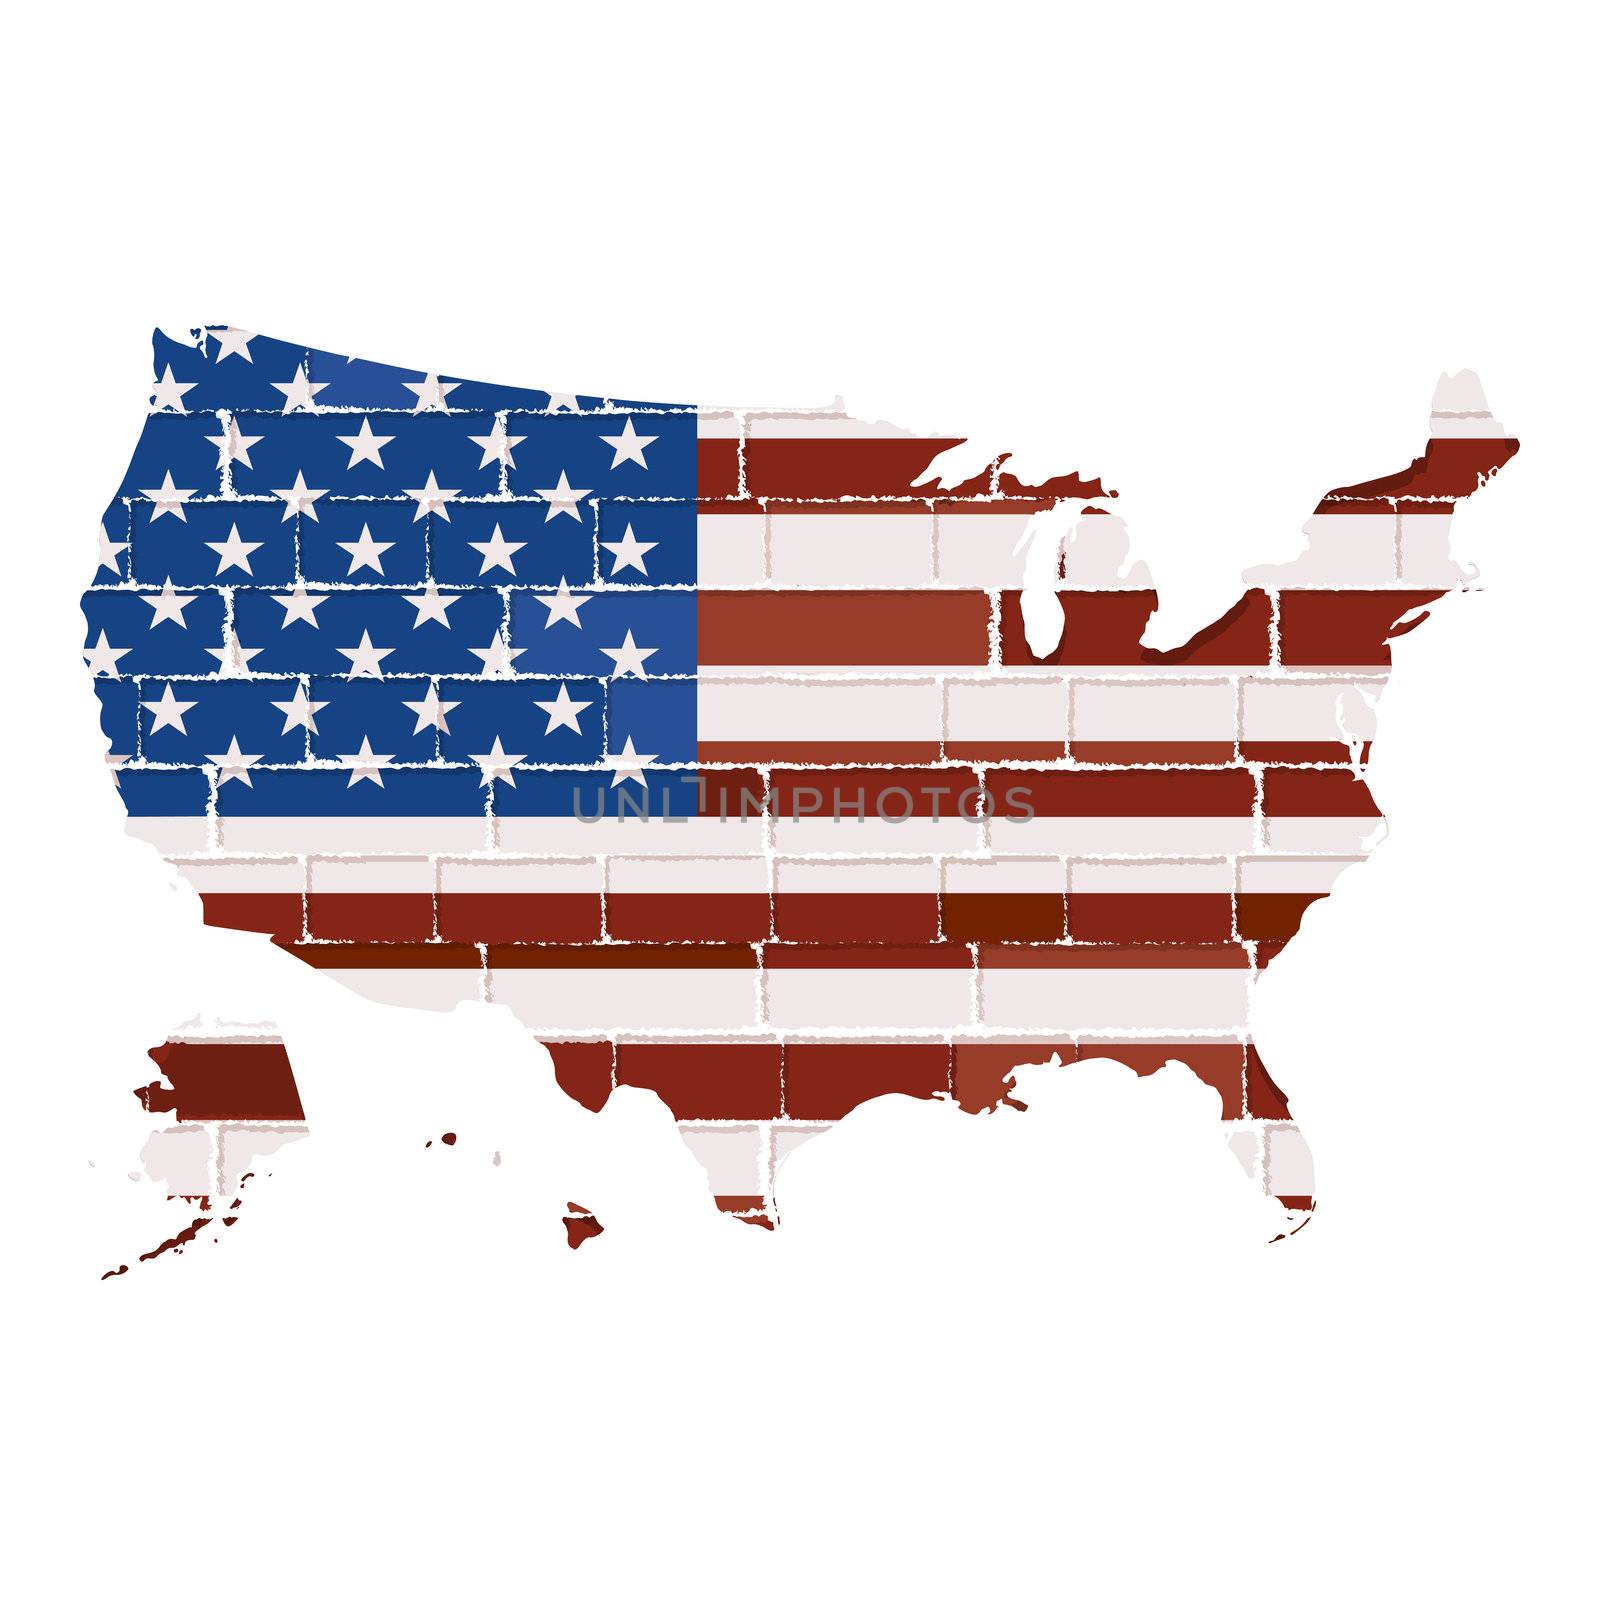 USA map by Lirch